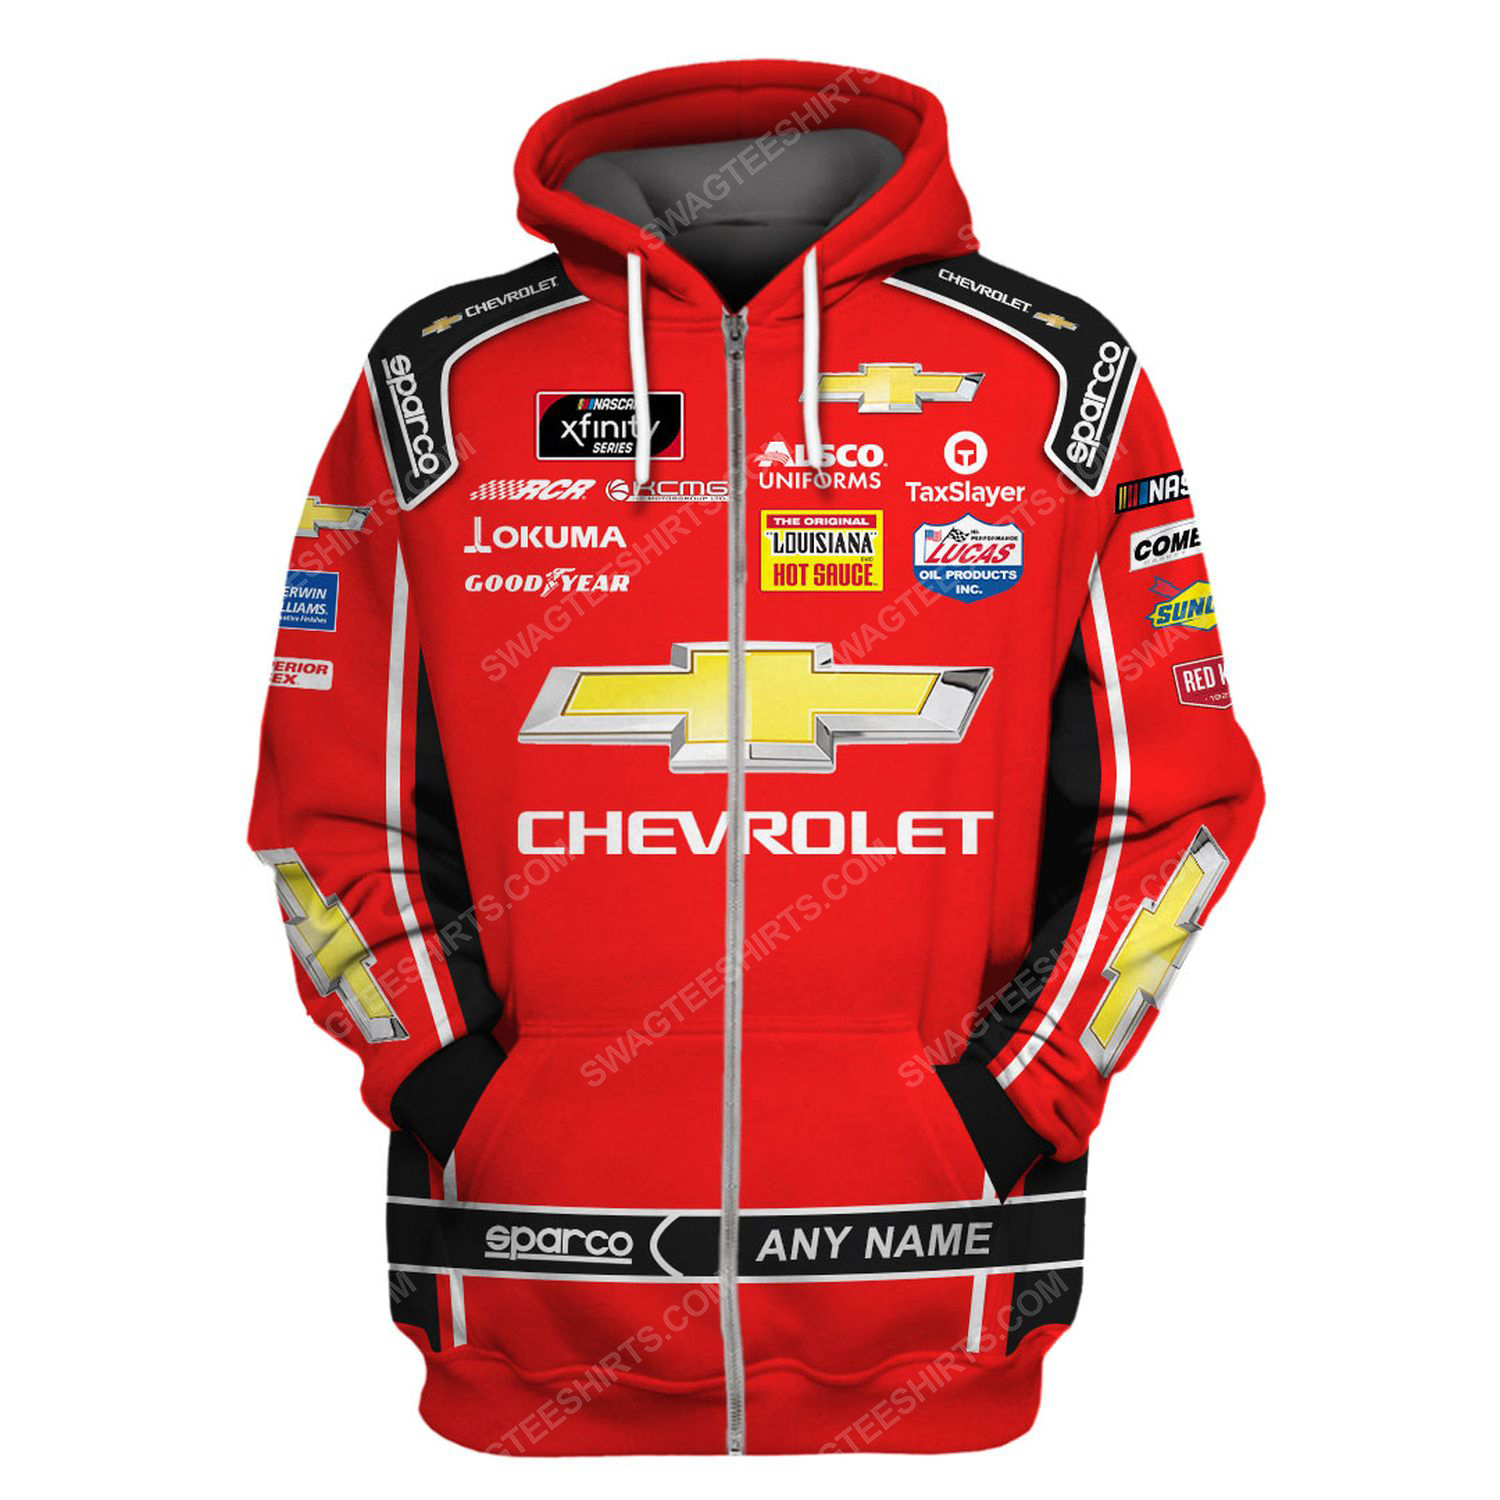 Custom chevrolet racing team motorsport full printing zip hoodie